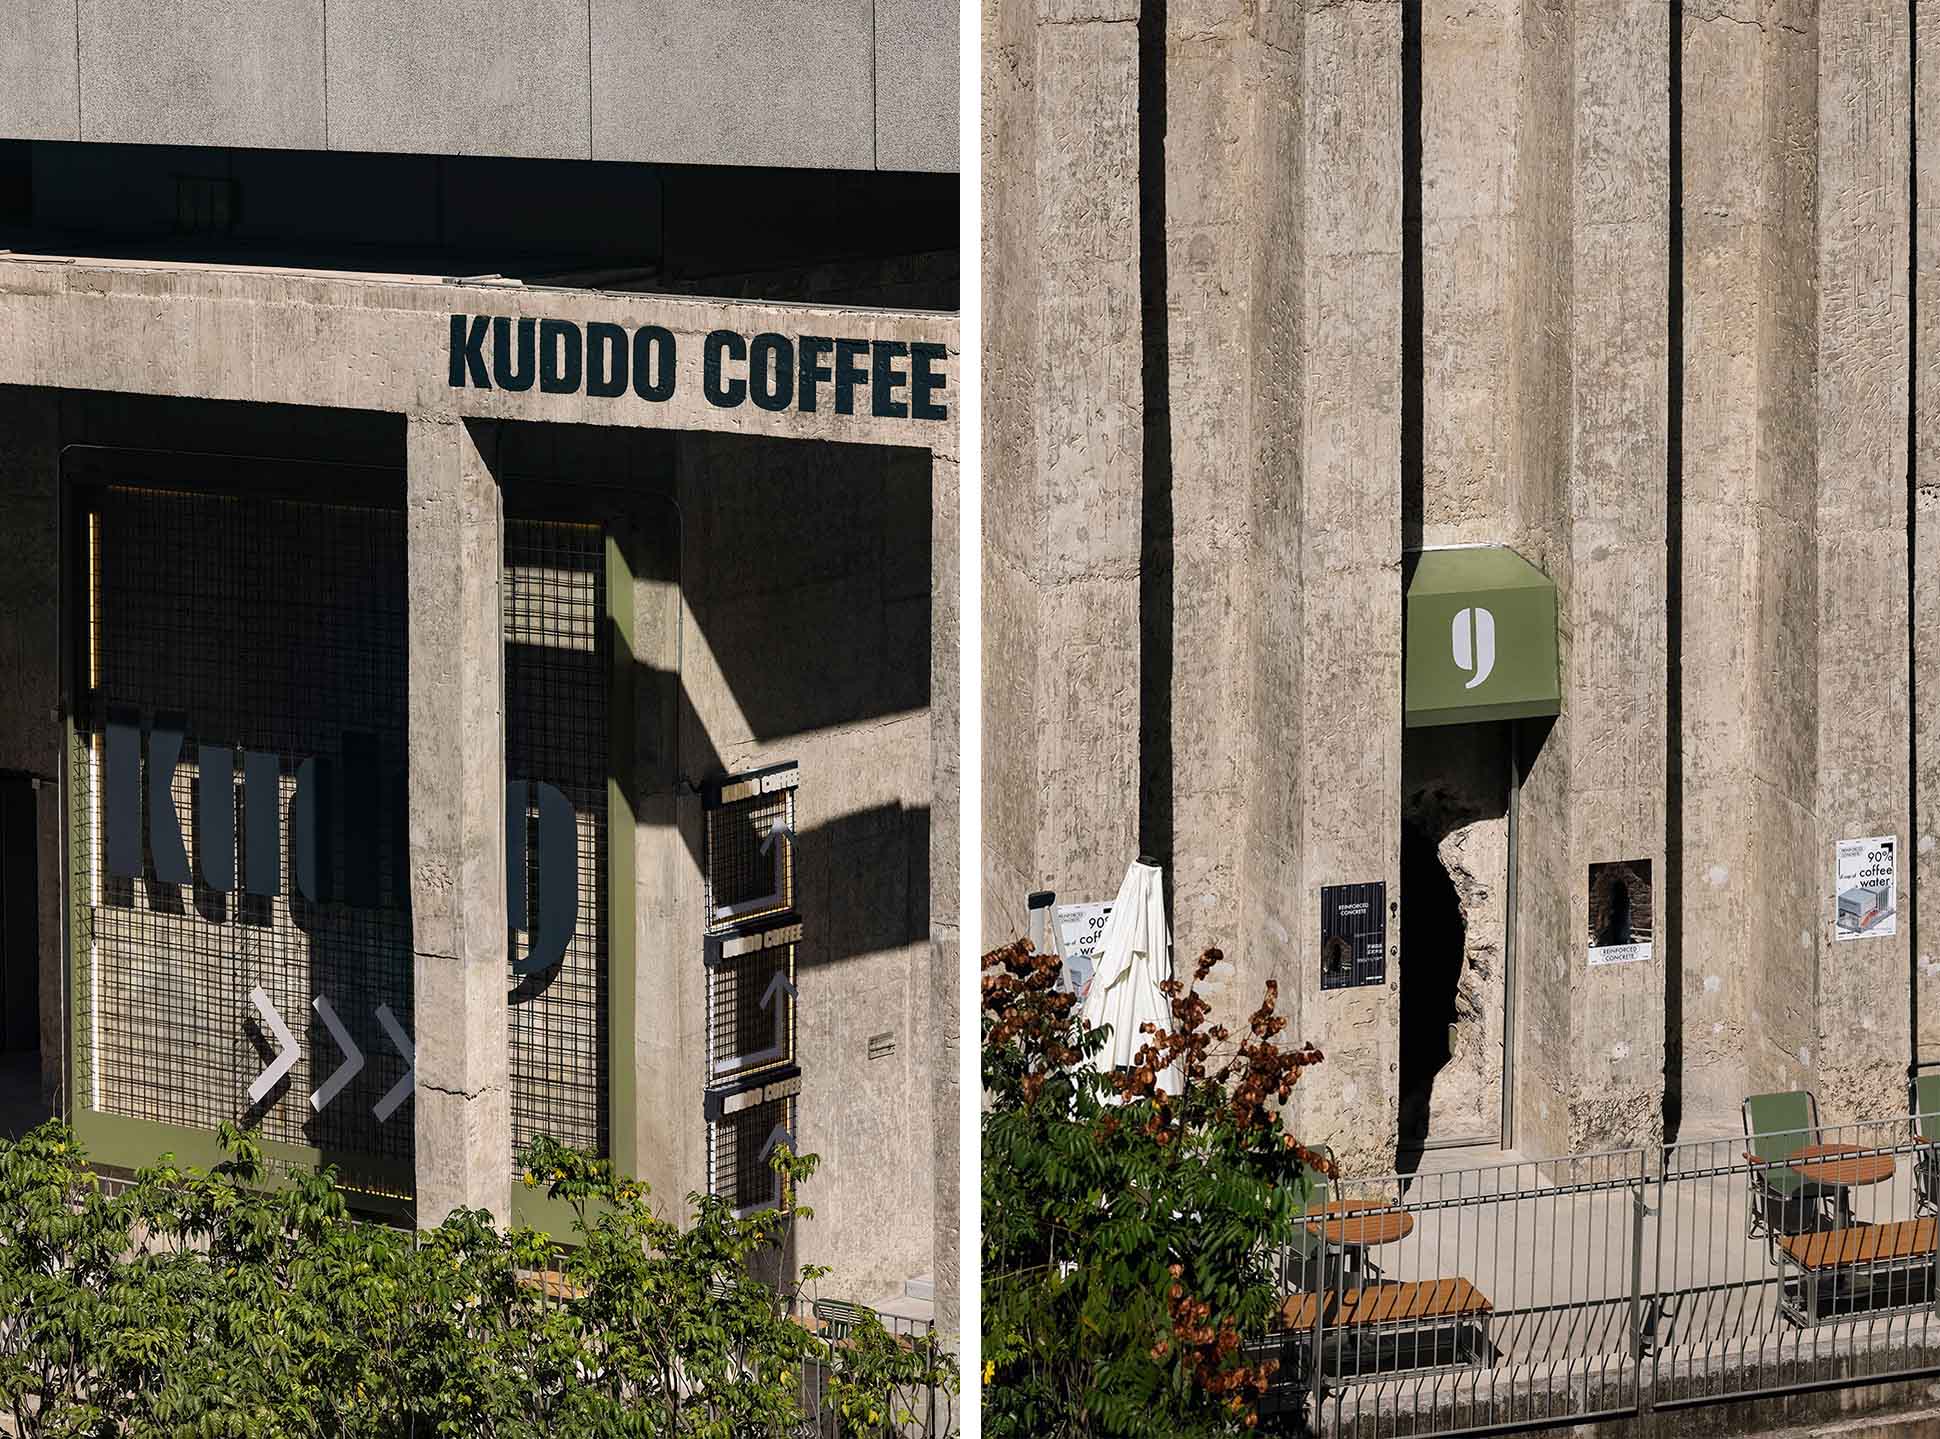 咖啡店设计,咖啡店设计案例,咖啡店设计方案,咖啡厅设计,茶饮店设计,创意咖啡店,小咖啡店设计,KUDDO coffee,深圳,KUDDO COFFEE天河城店,叙室设计